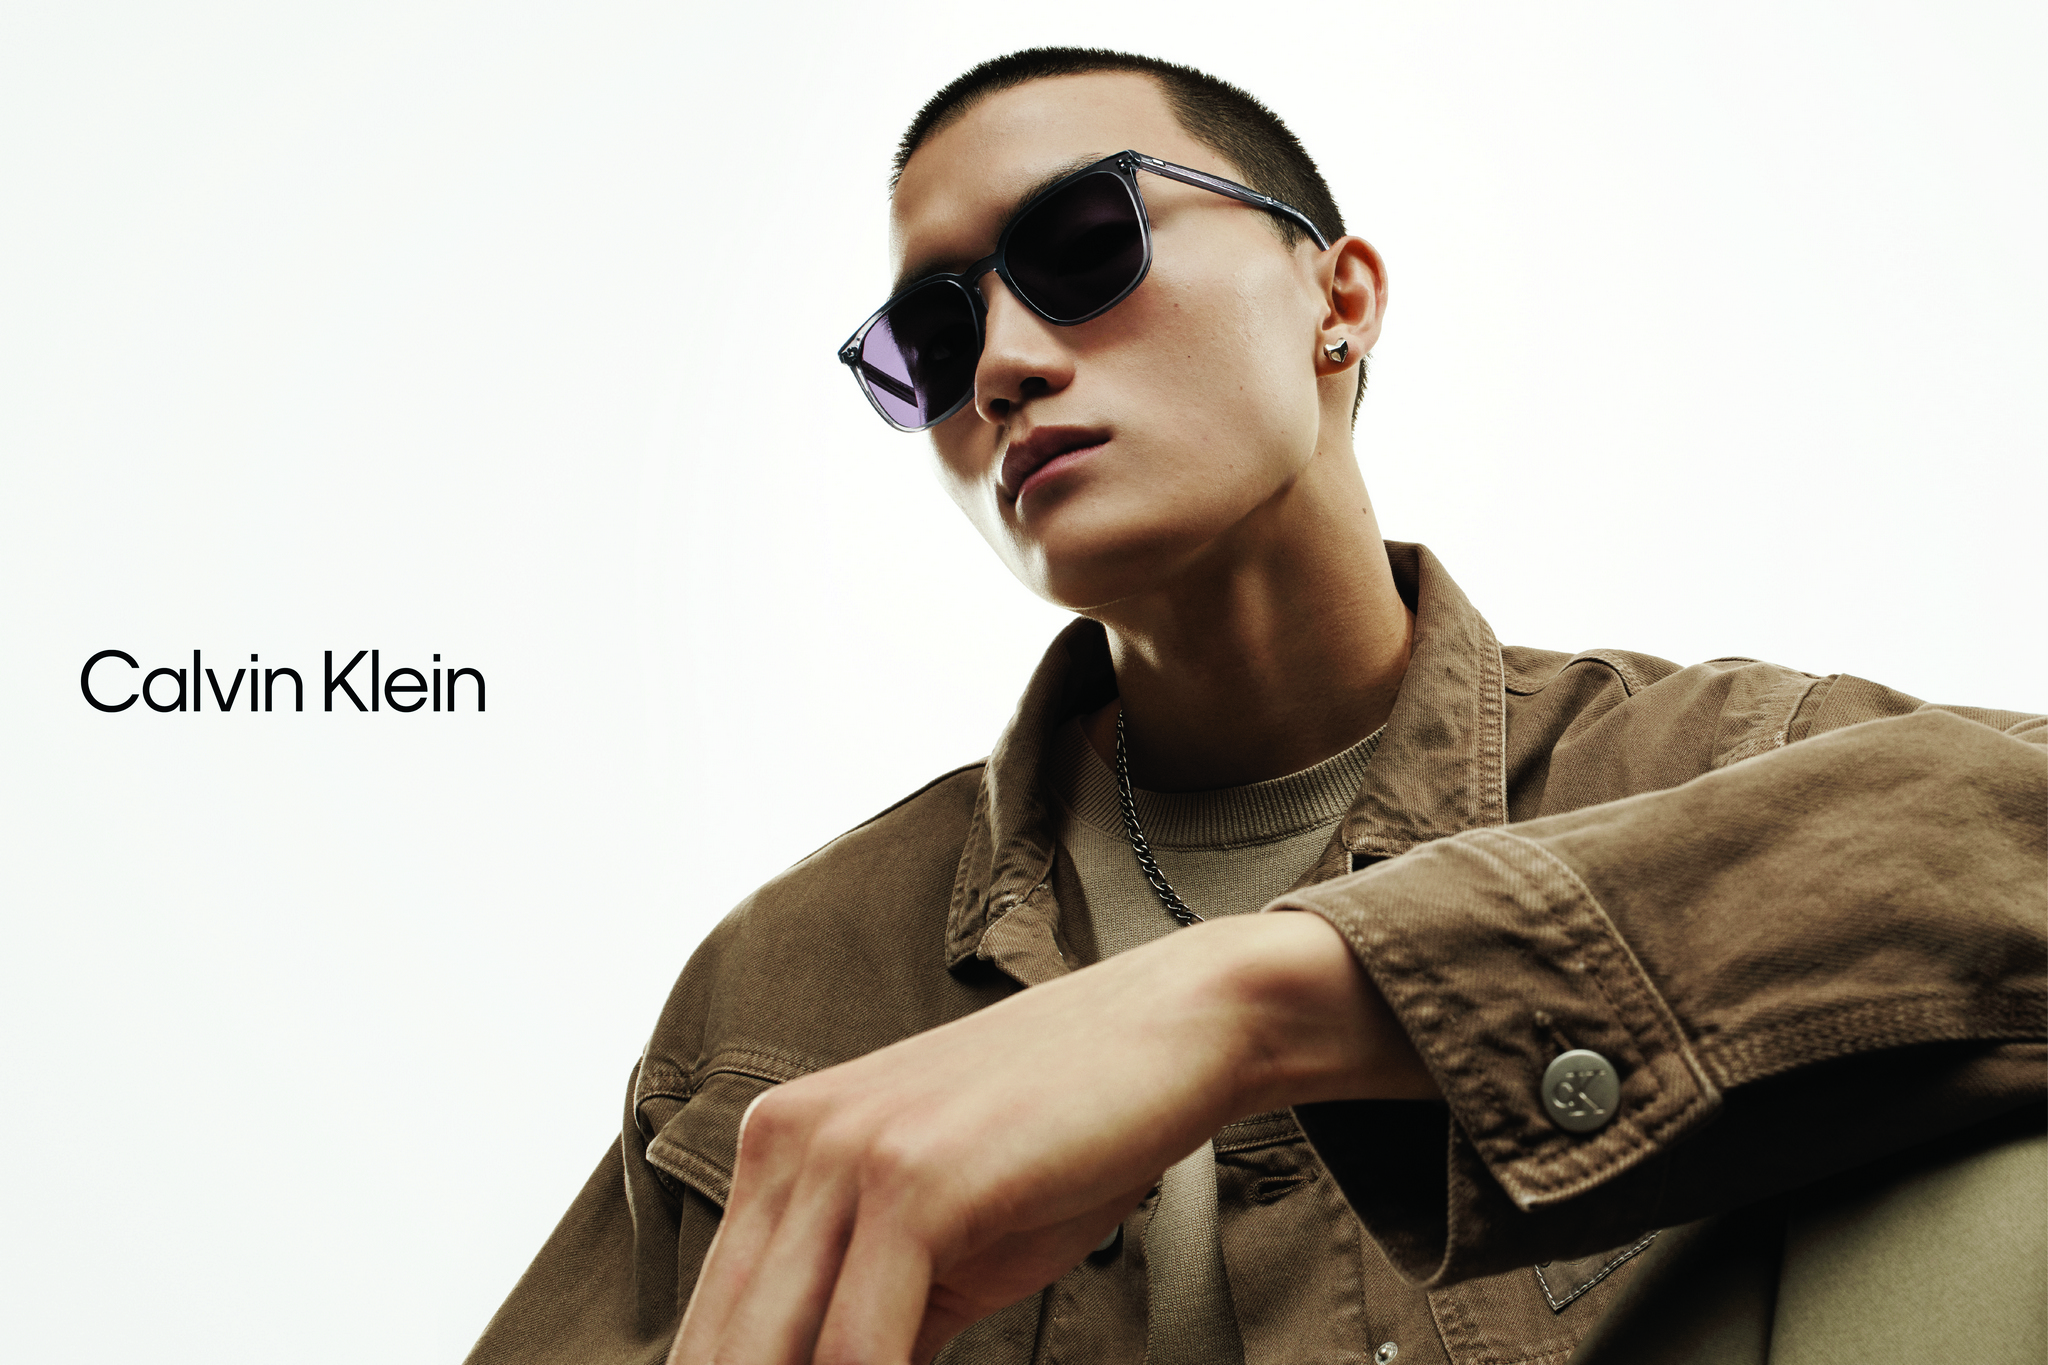 Mắt kính Calvin Klein - Nâng cấp phong cách chuẩn toàn cầu!